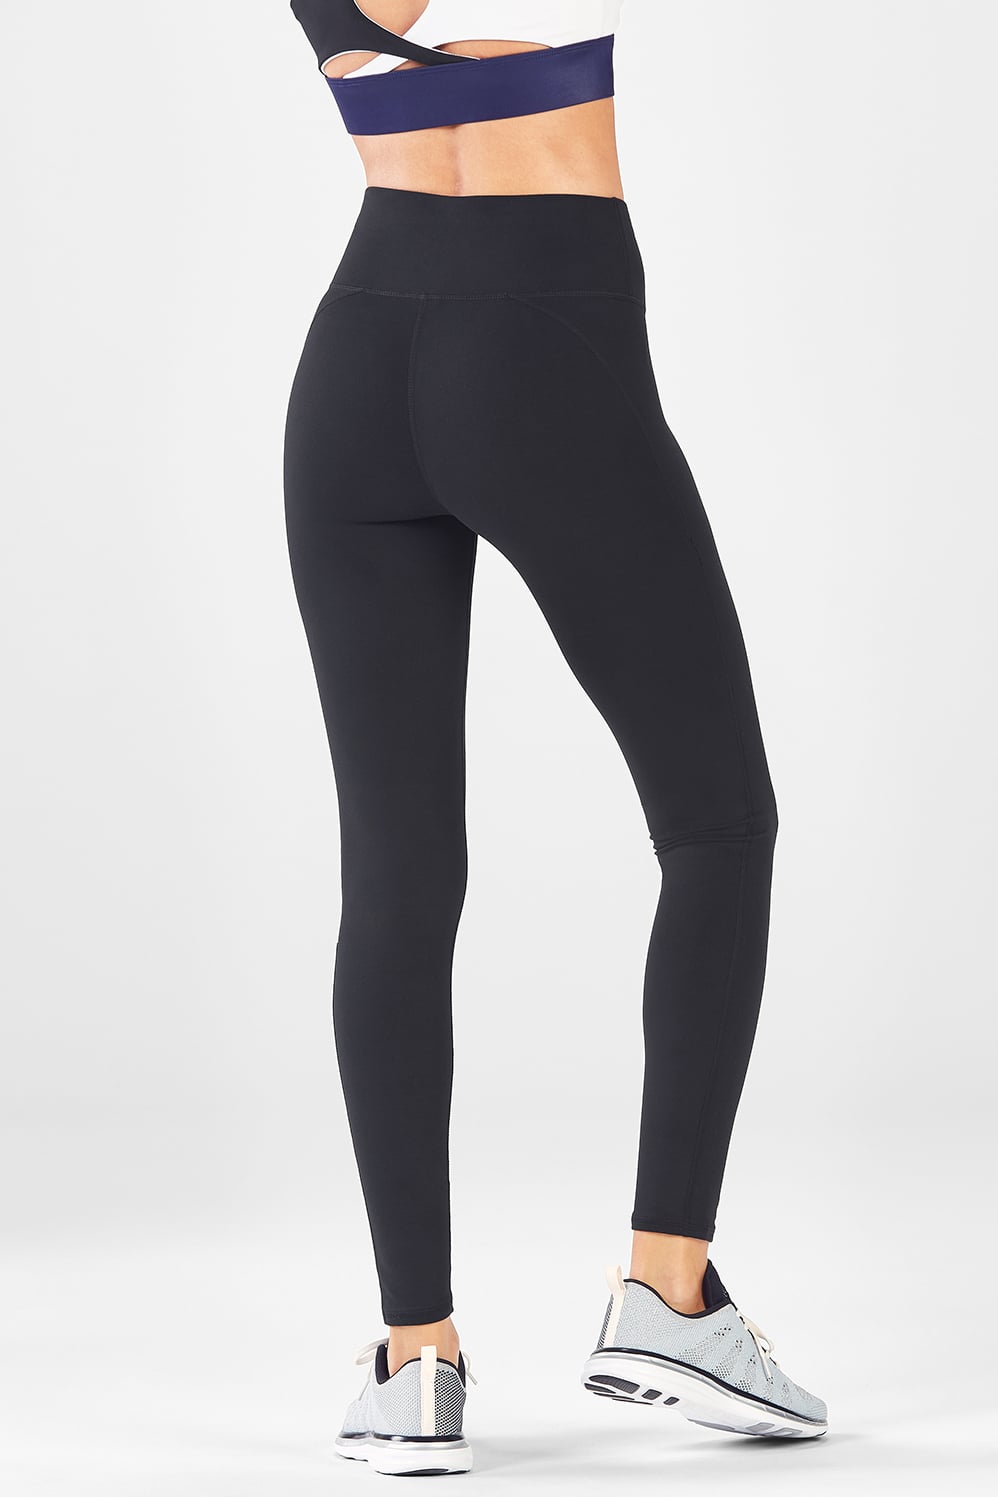 Women Bottoms: Best Squat Proof Leggings & Shorts | TLF Apparel | Women  jogger pants, Tlf apparel, Gym wear for women